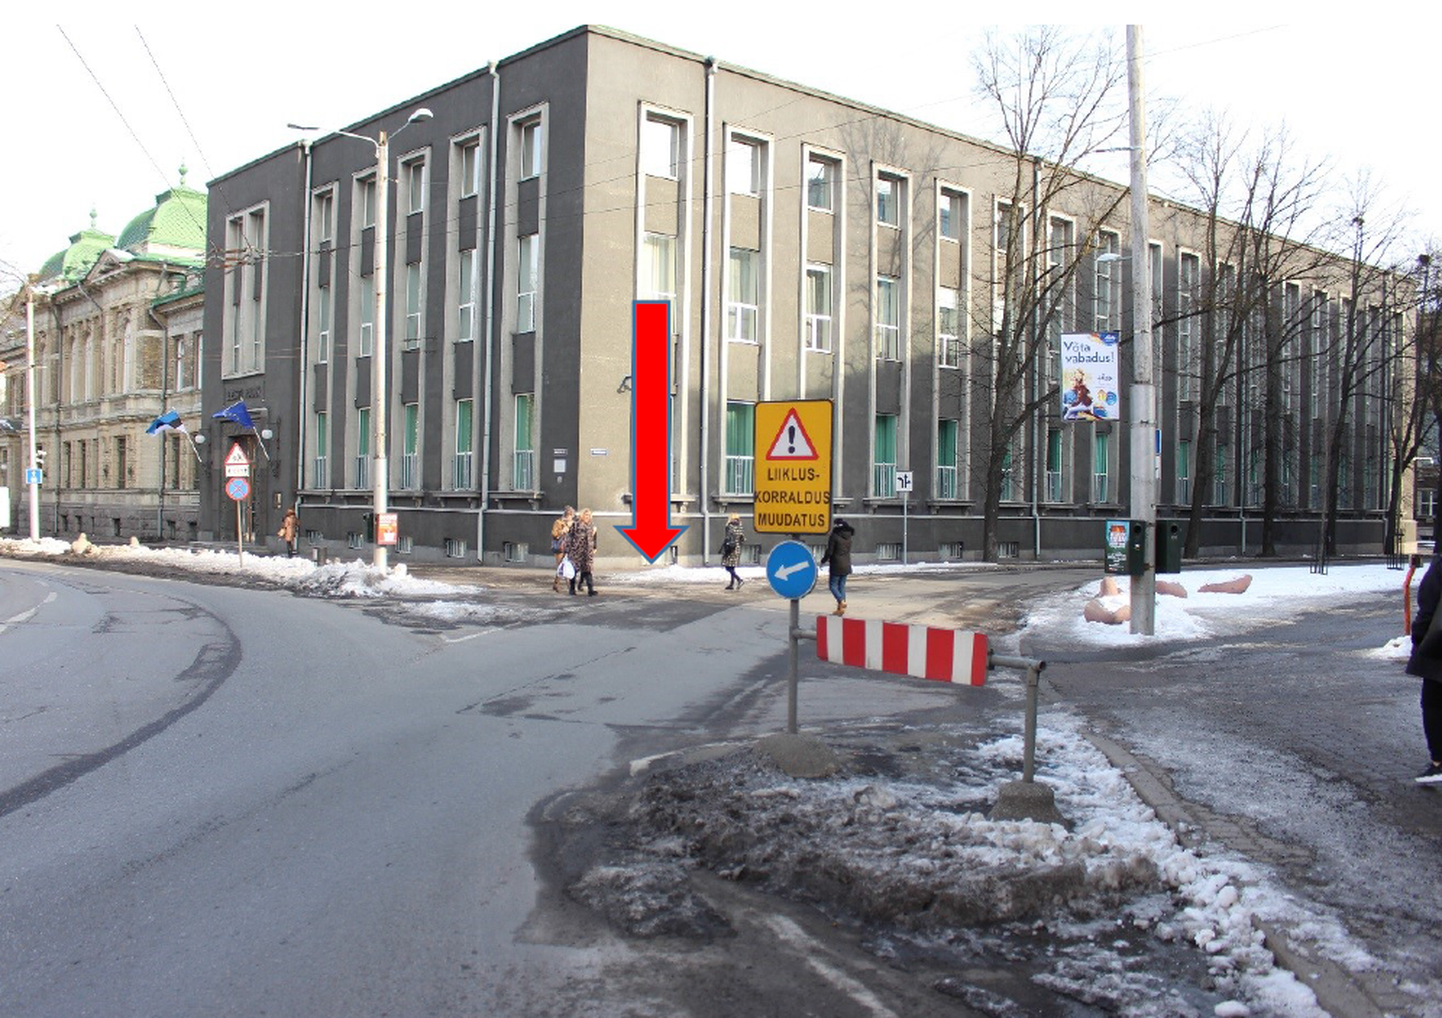 Estonia puiestee ja Kentmanni tänavate ristmik - antud kohas on ohustatud jalakäijad, keda ei taheta lasta autojuhtide poolt üle tee.